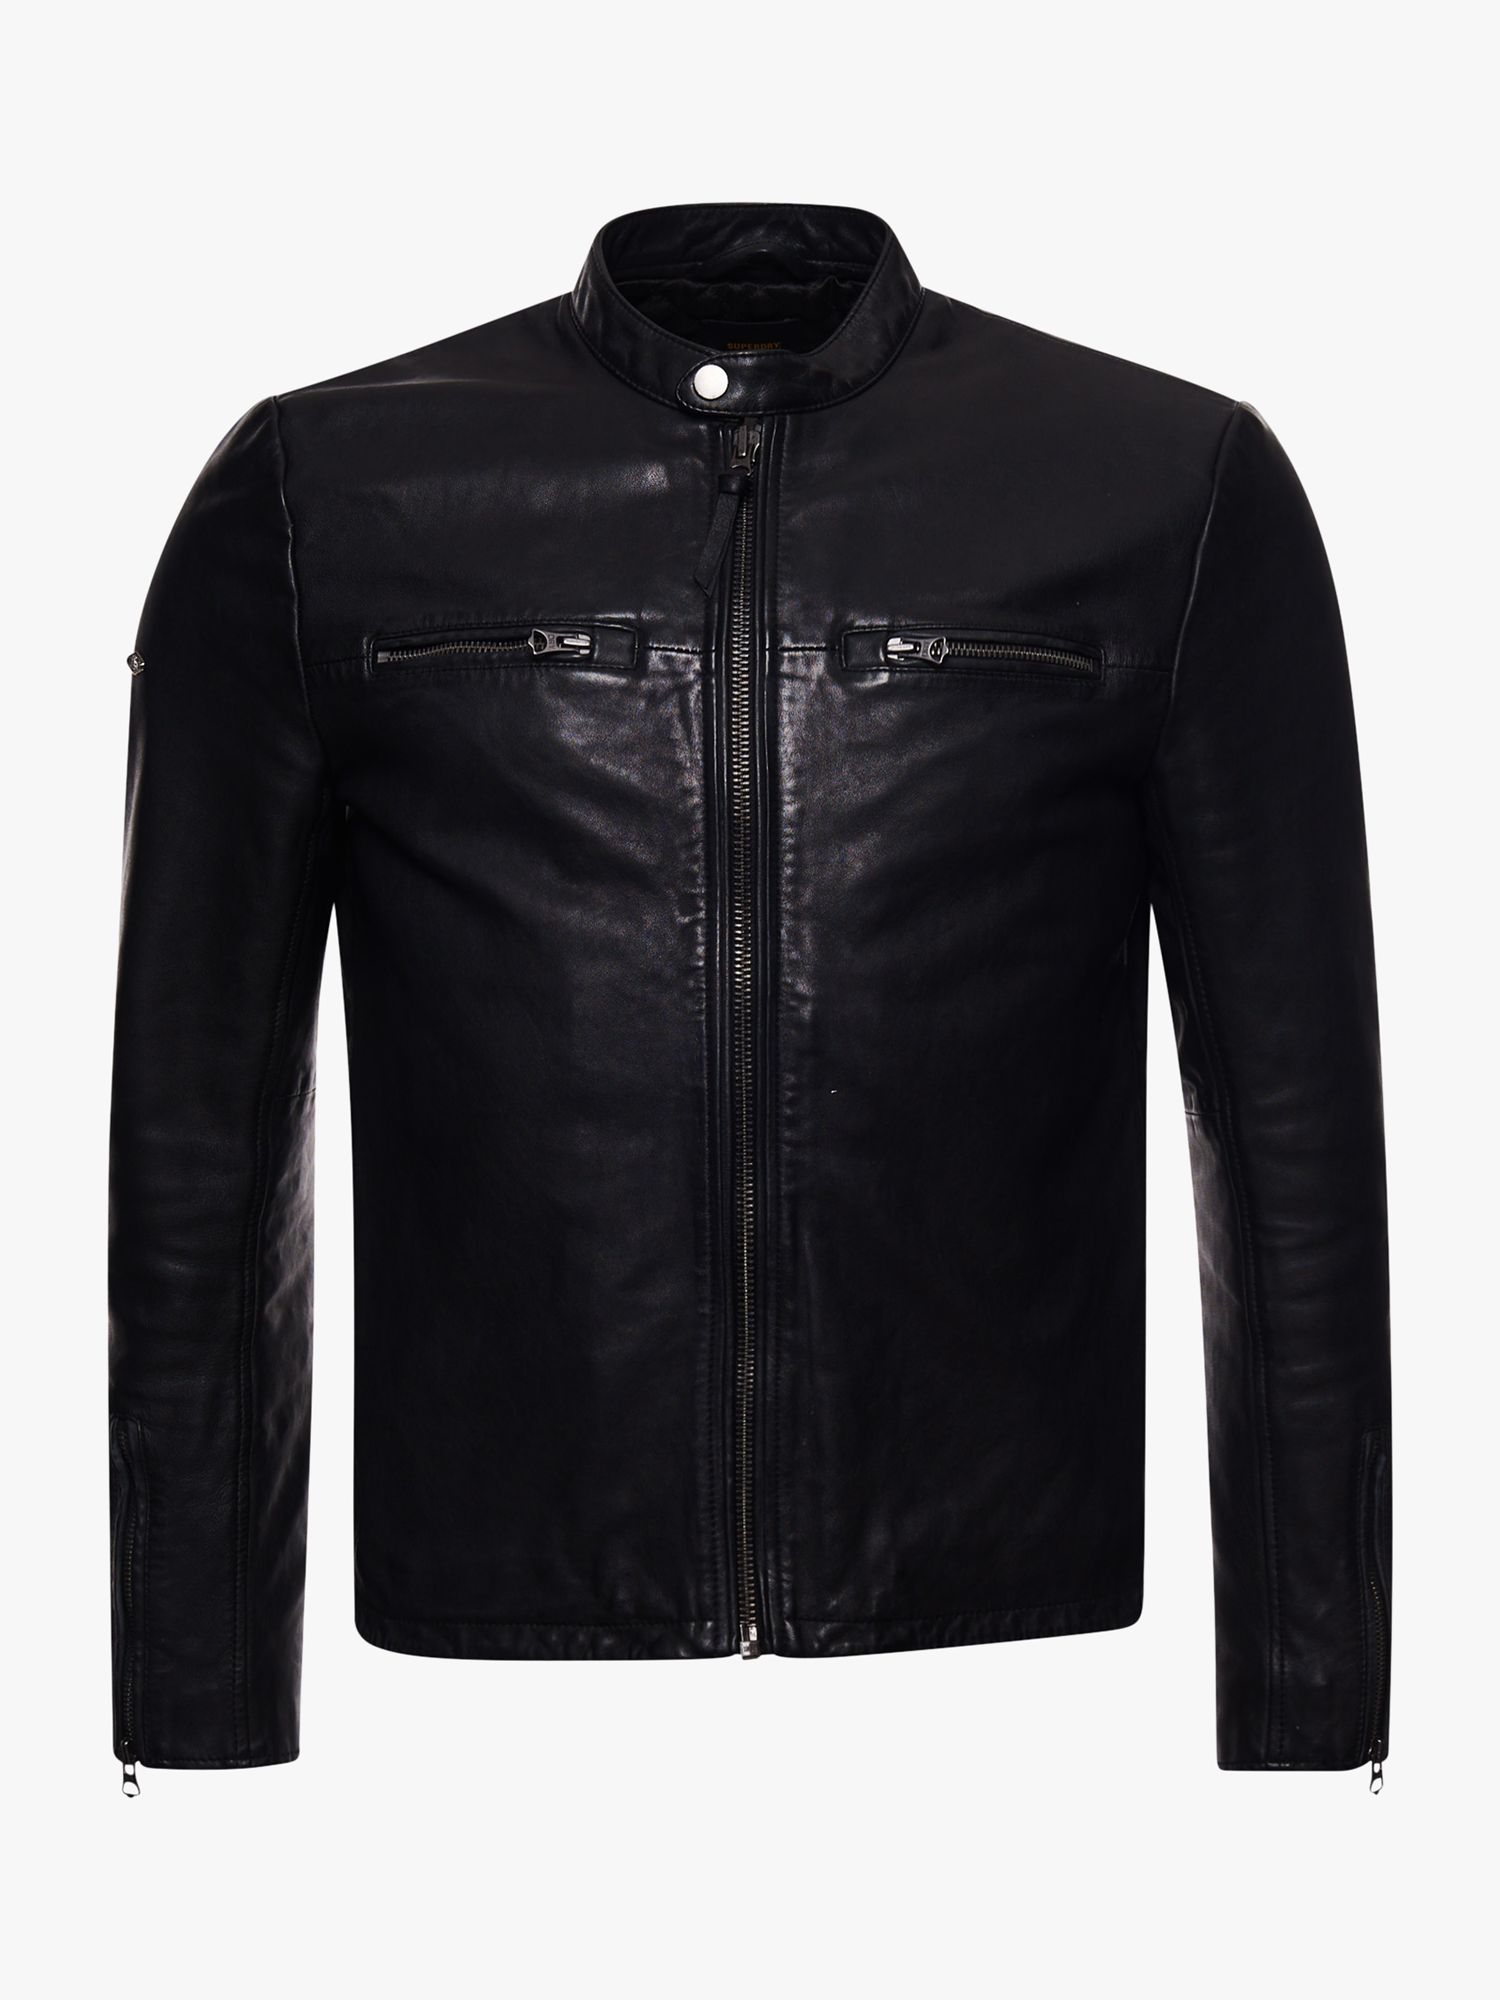 Superdry Moto Leather Biker Jacket, Black at John Lewis & Partners